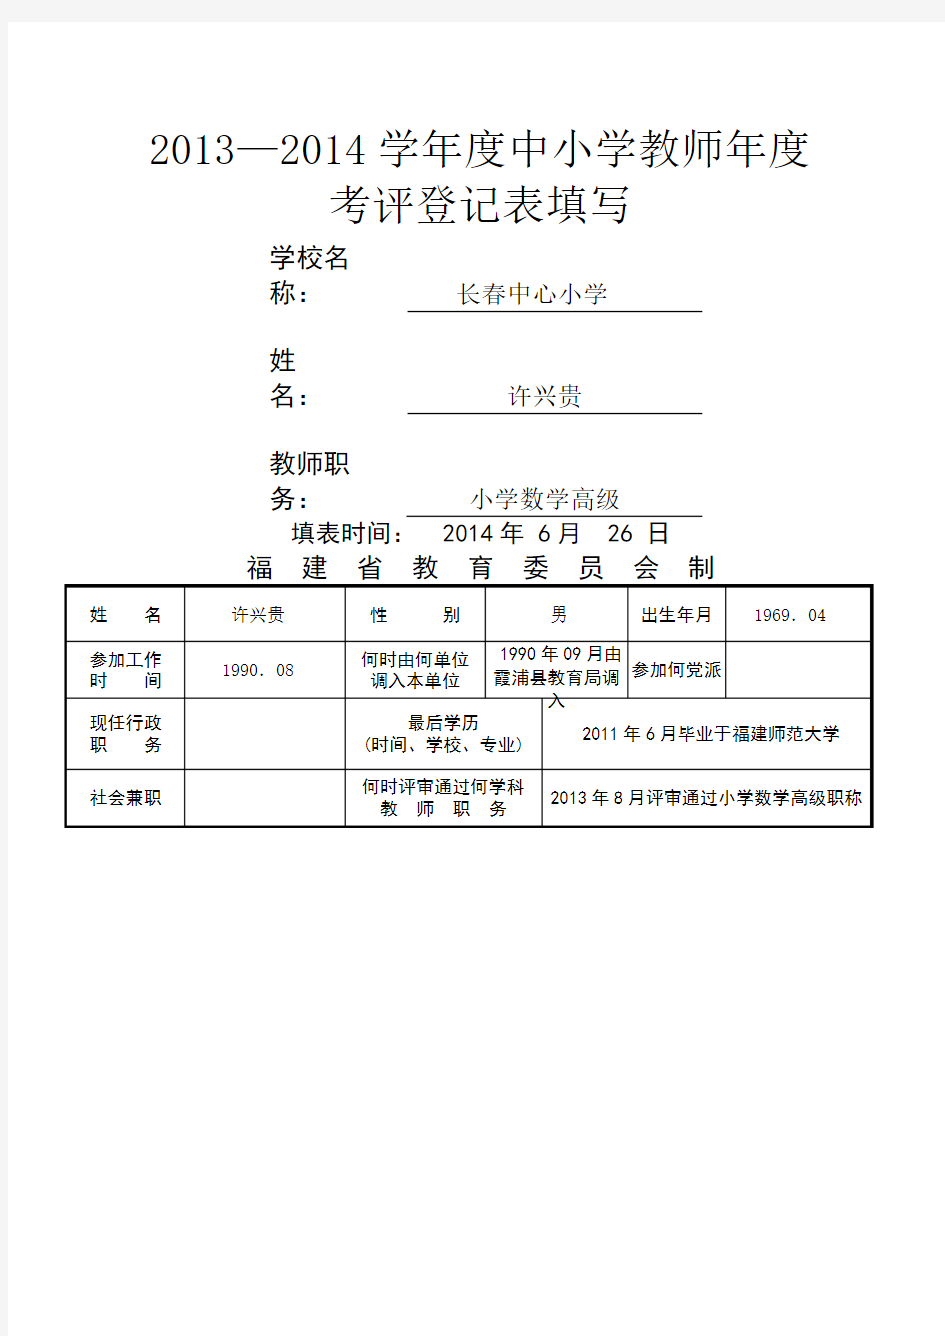 福建省中小学教师职务考评登记表